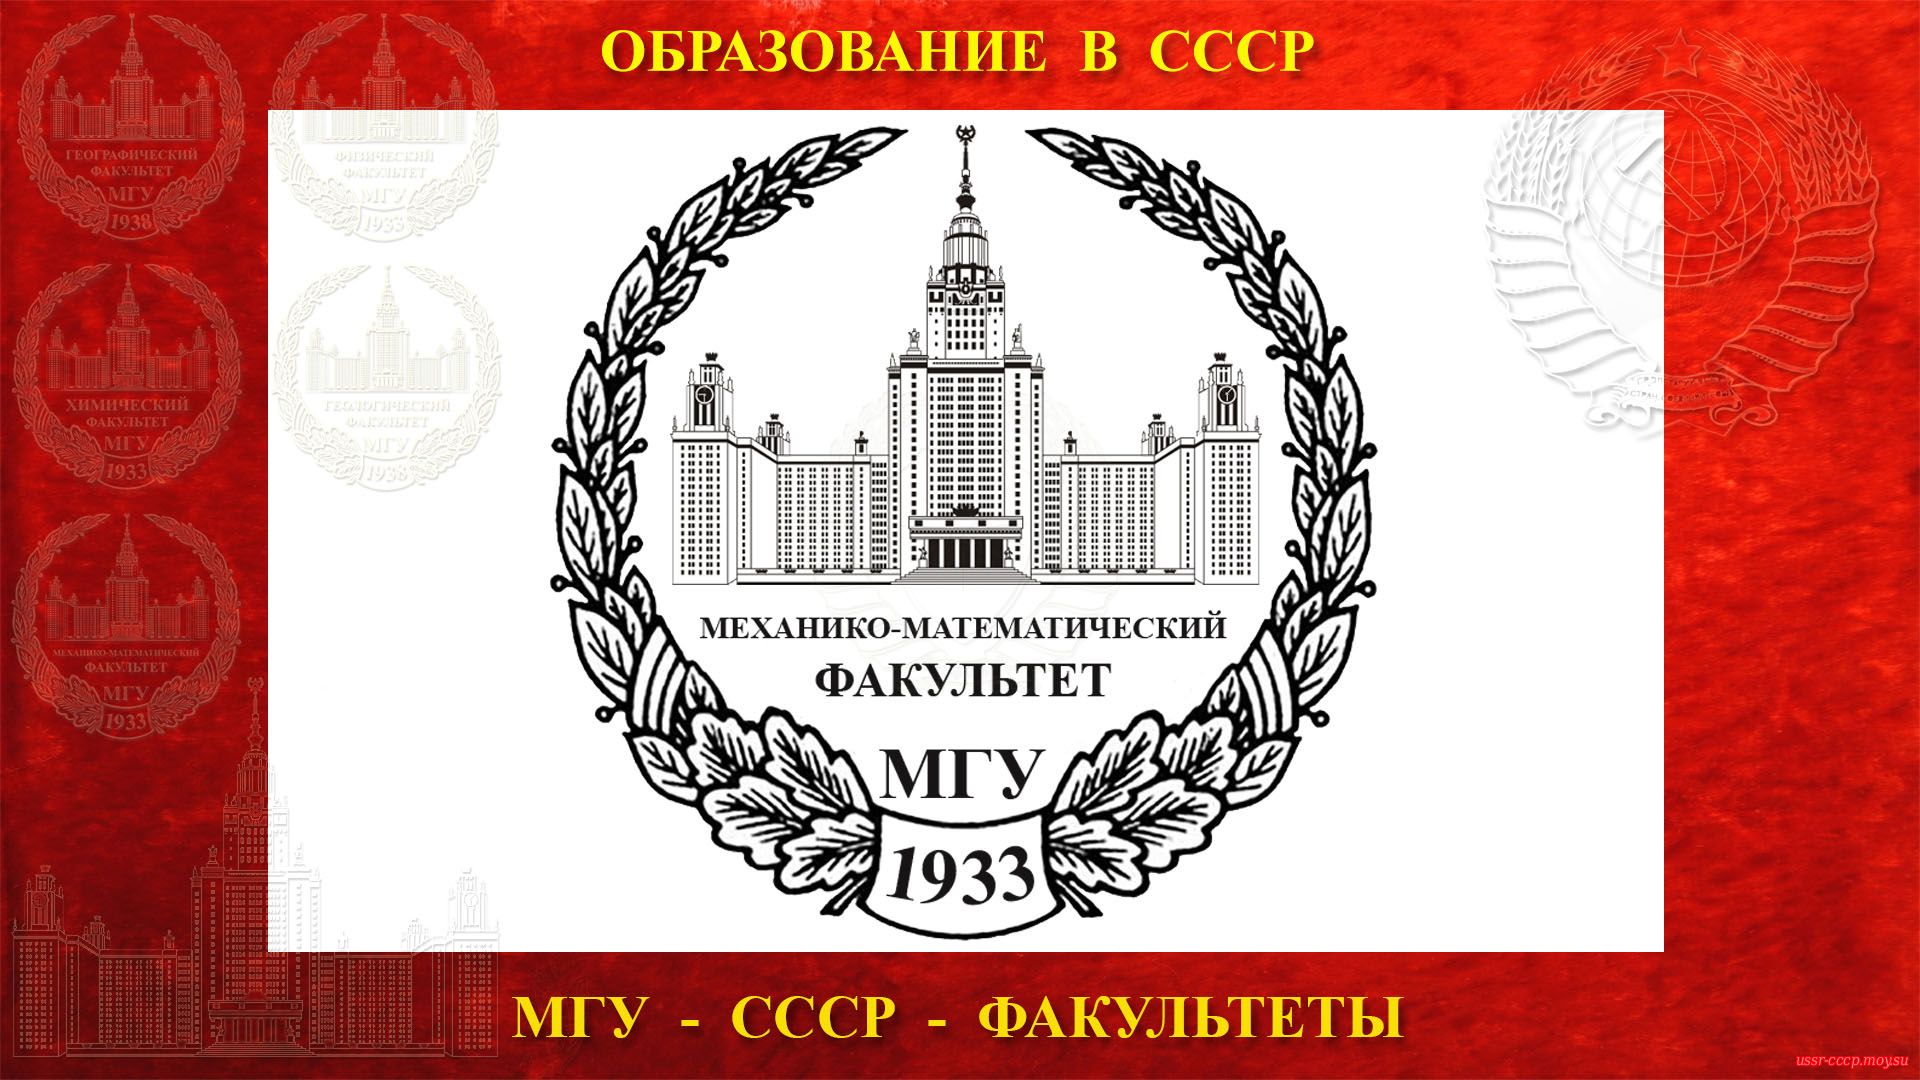 Механико-математический факультет МГУ — (04.04.1933)